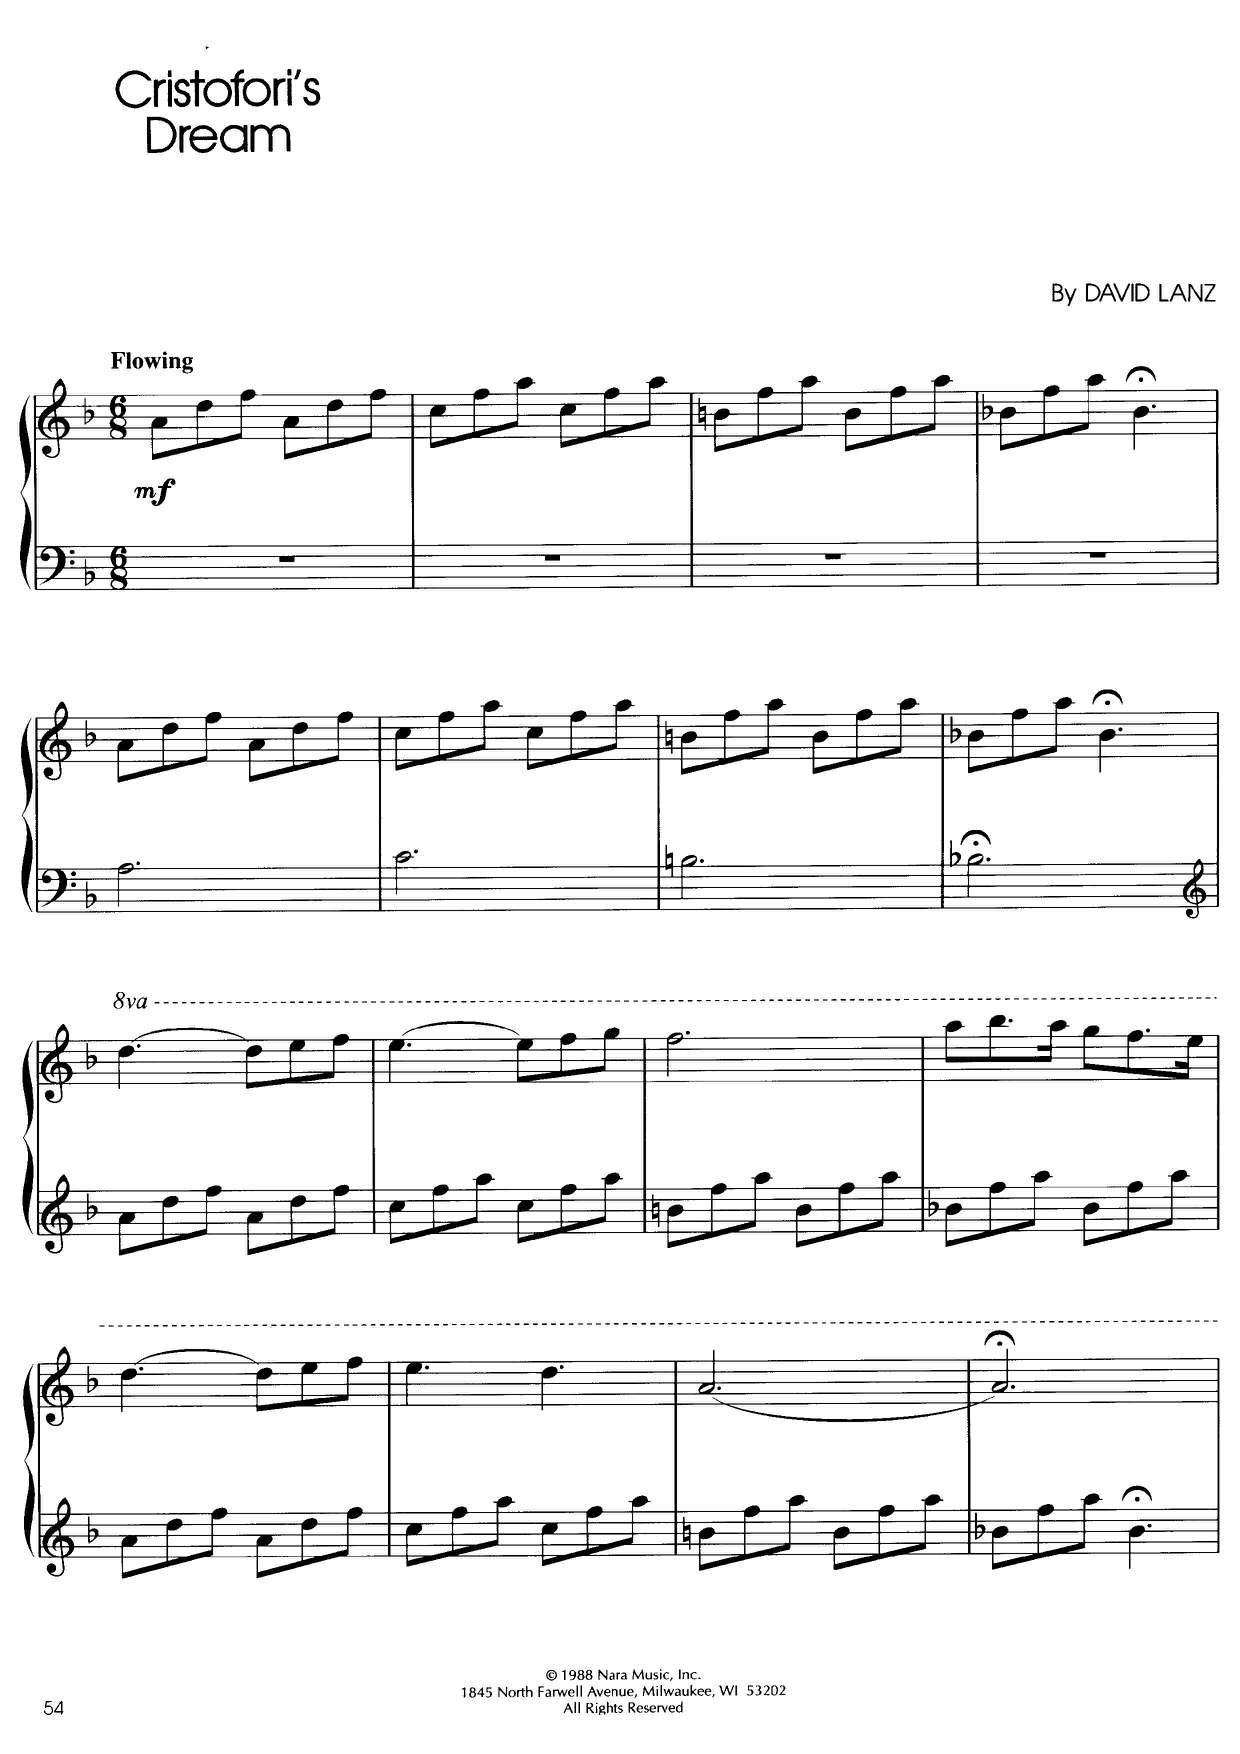 Cristofori's Dream Score